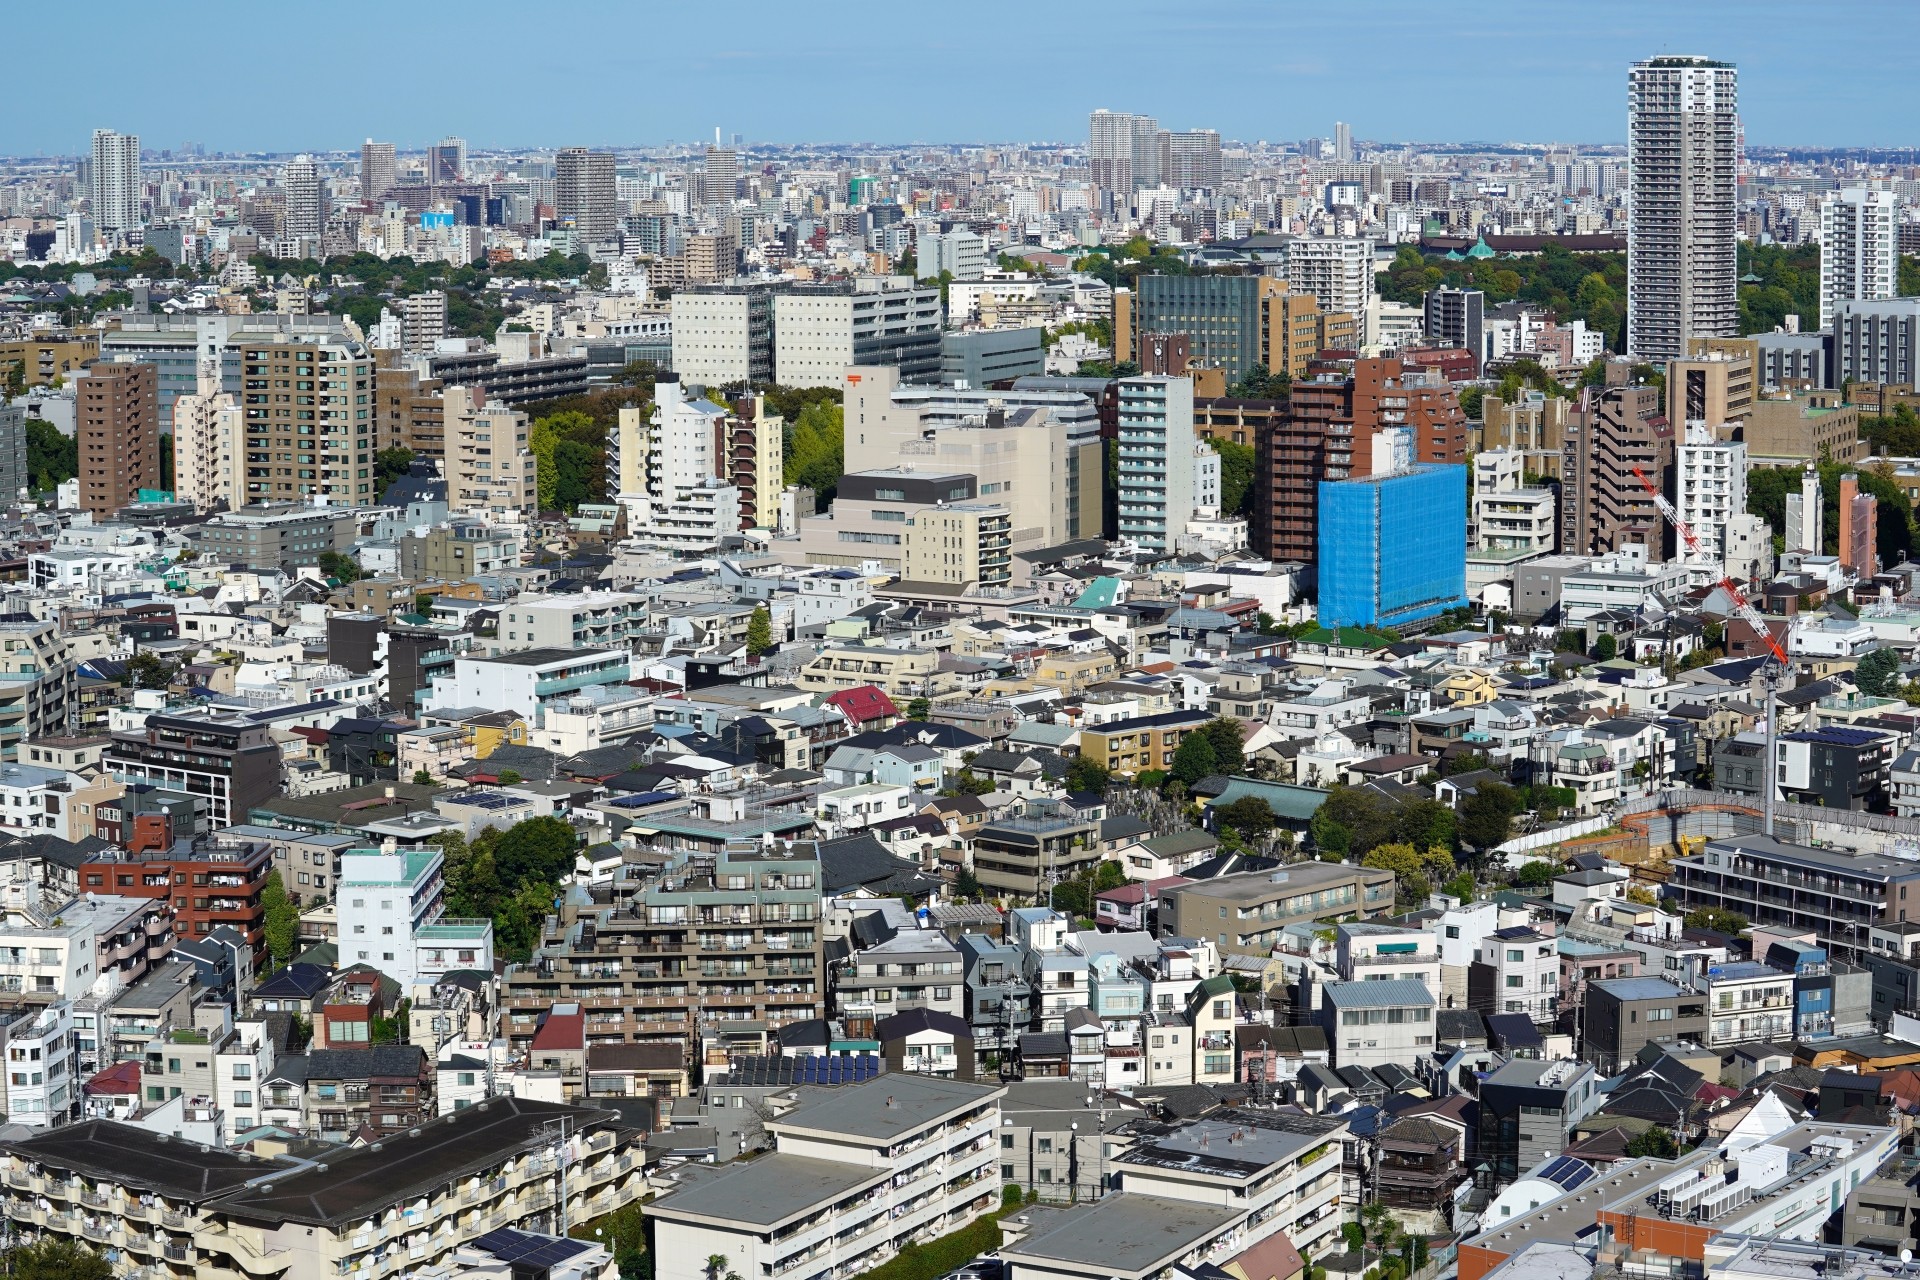 東京都内で分譲住宅を選ぶ際の賢い資金計画